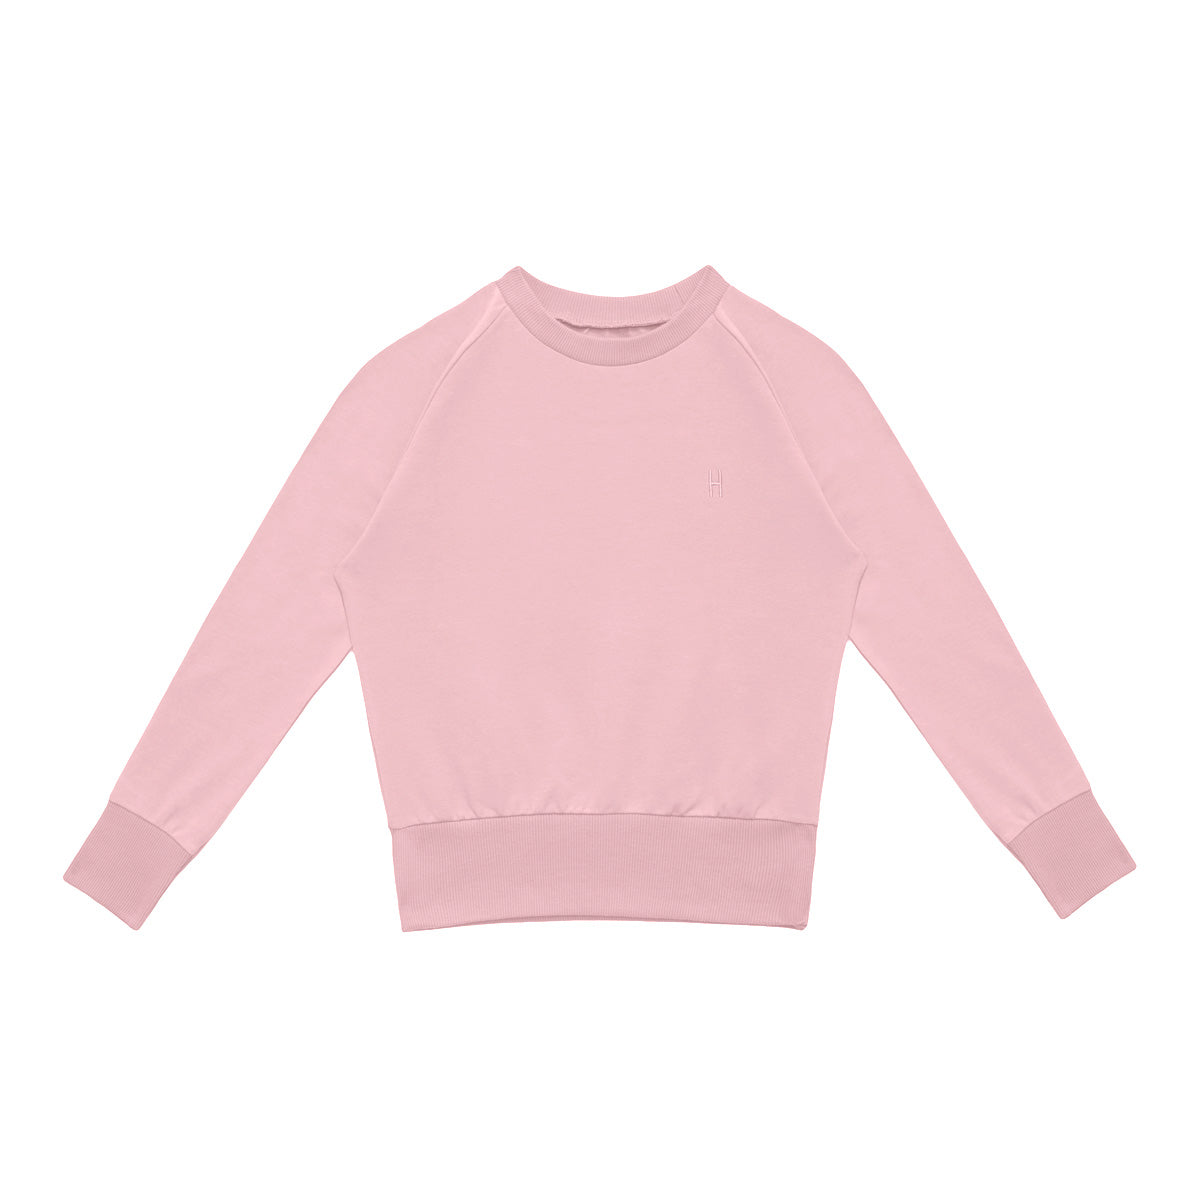 B2B 2-in-1 Summer Sweater SCARLET